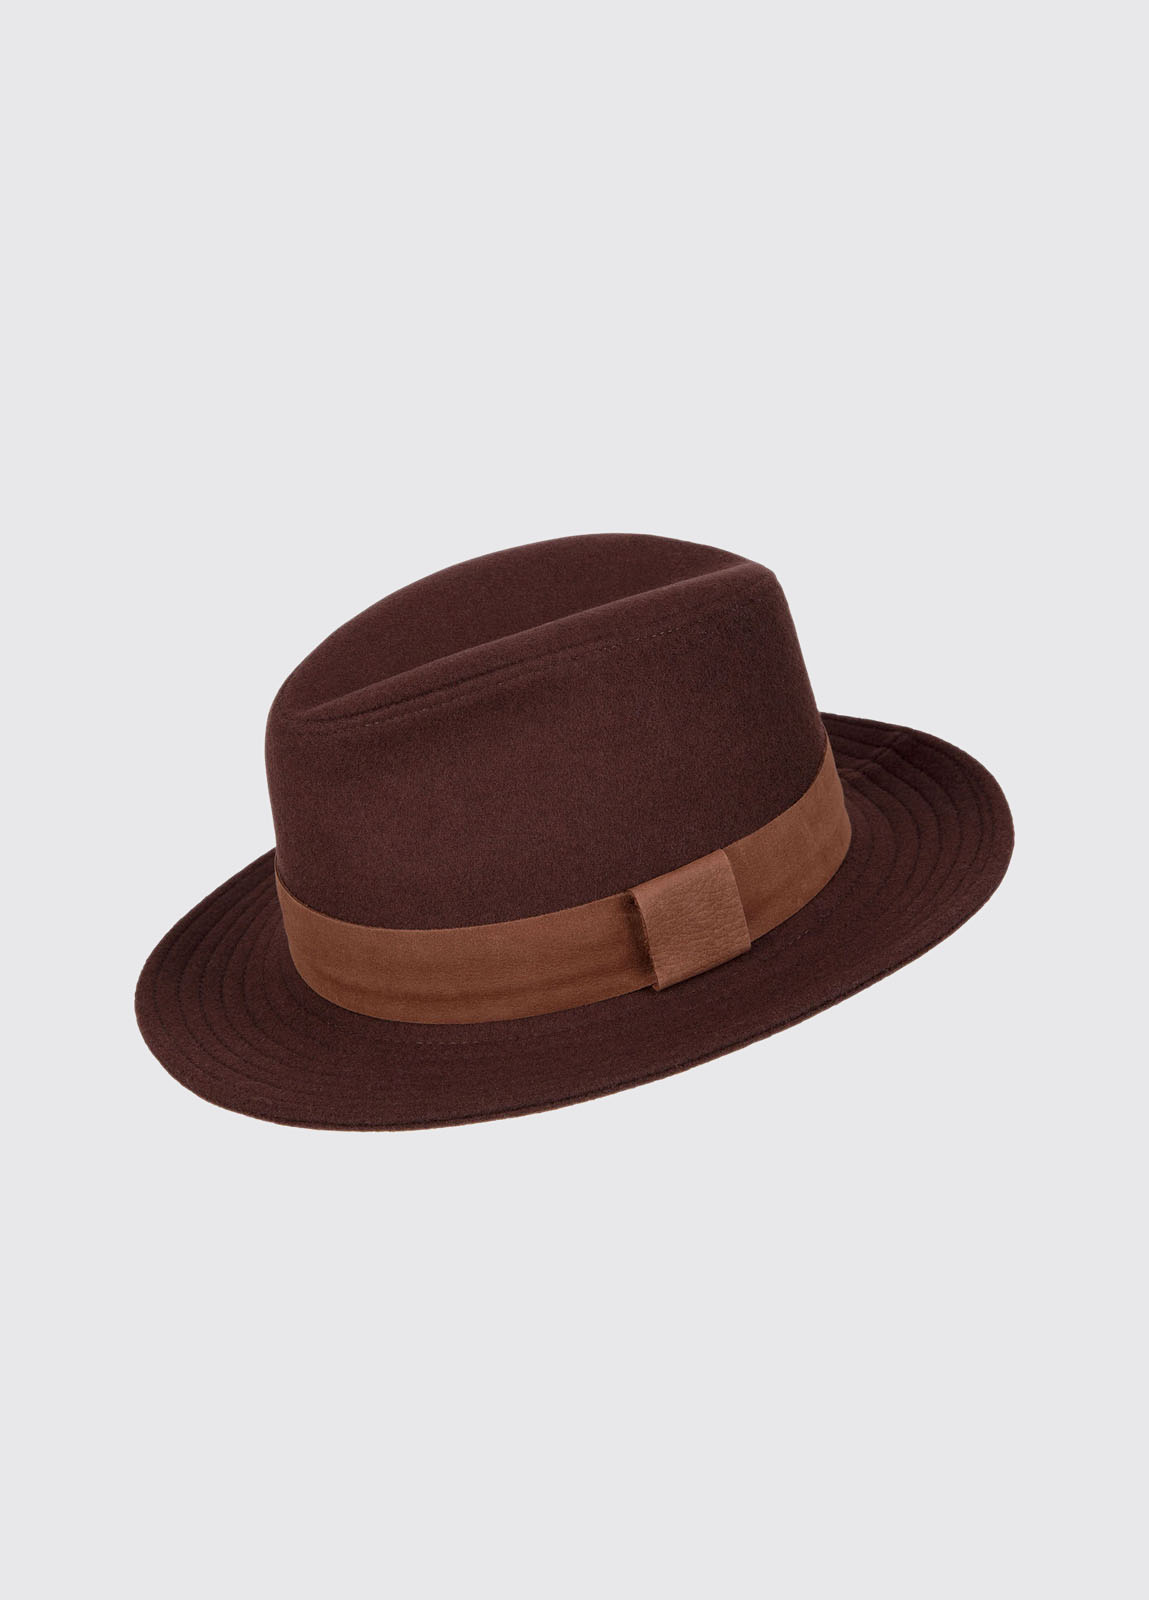 Rathowen Hat - Bourbon